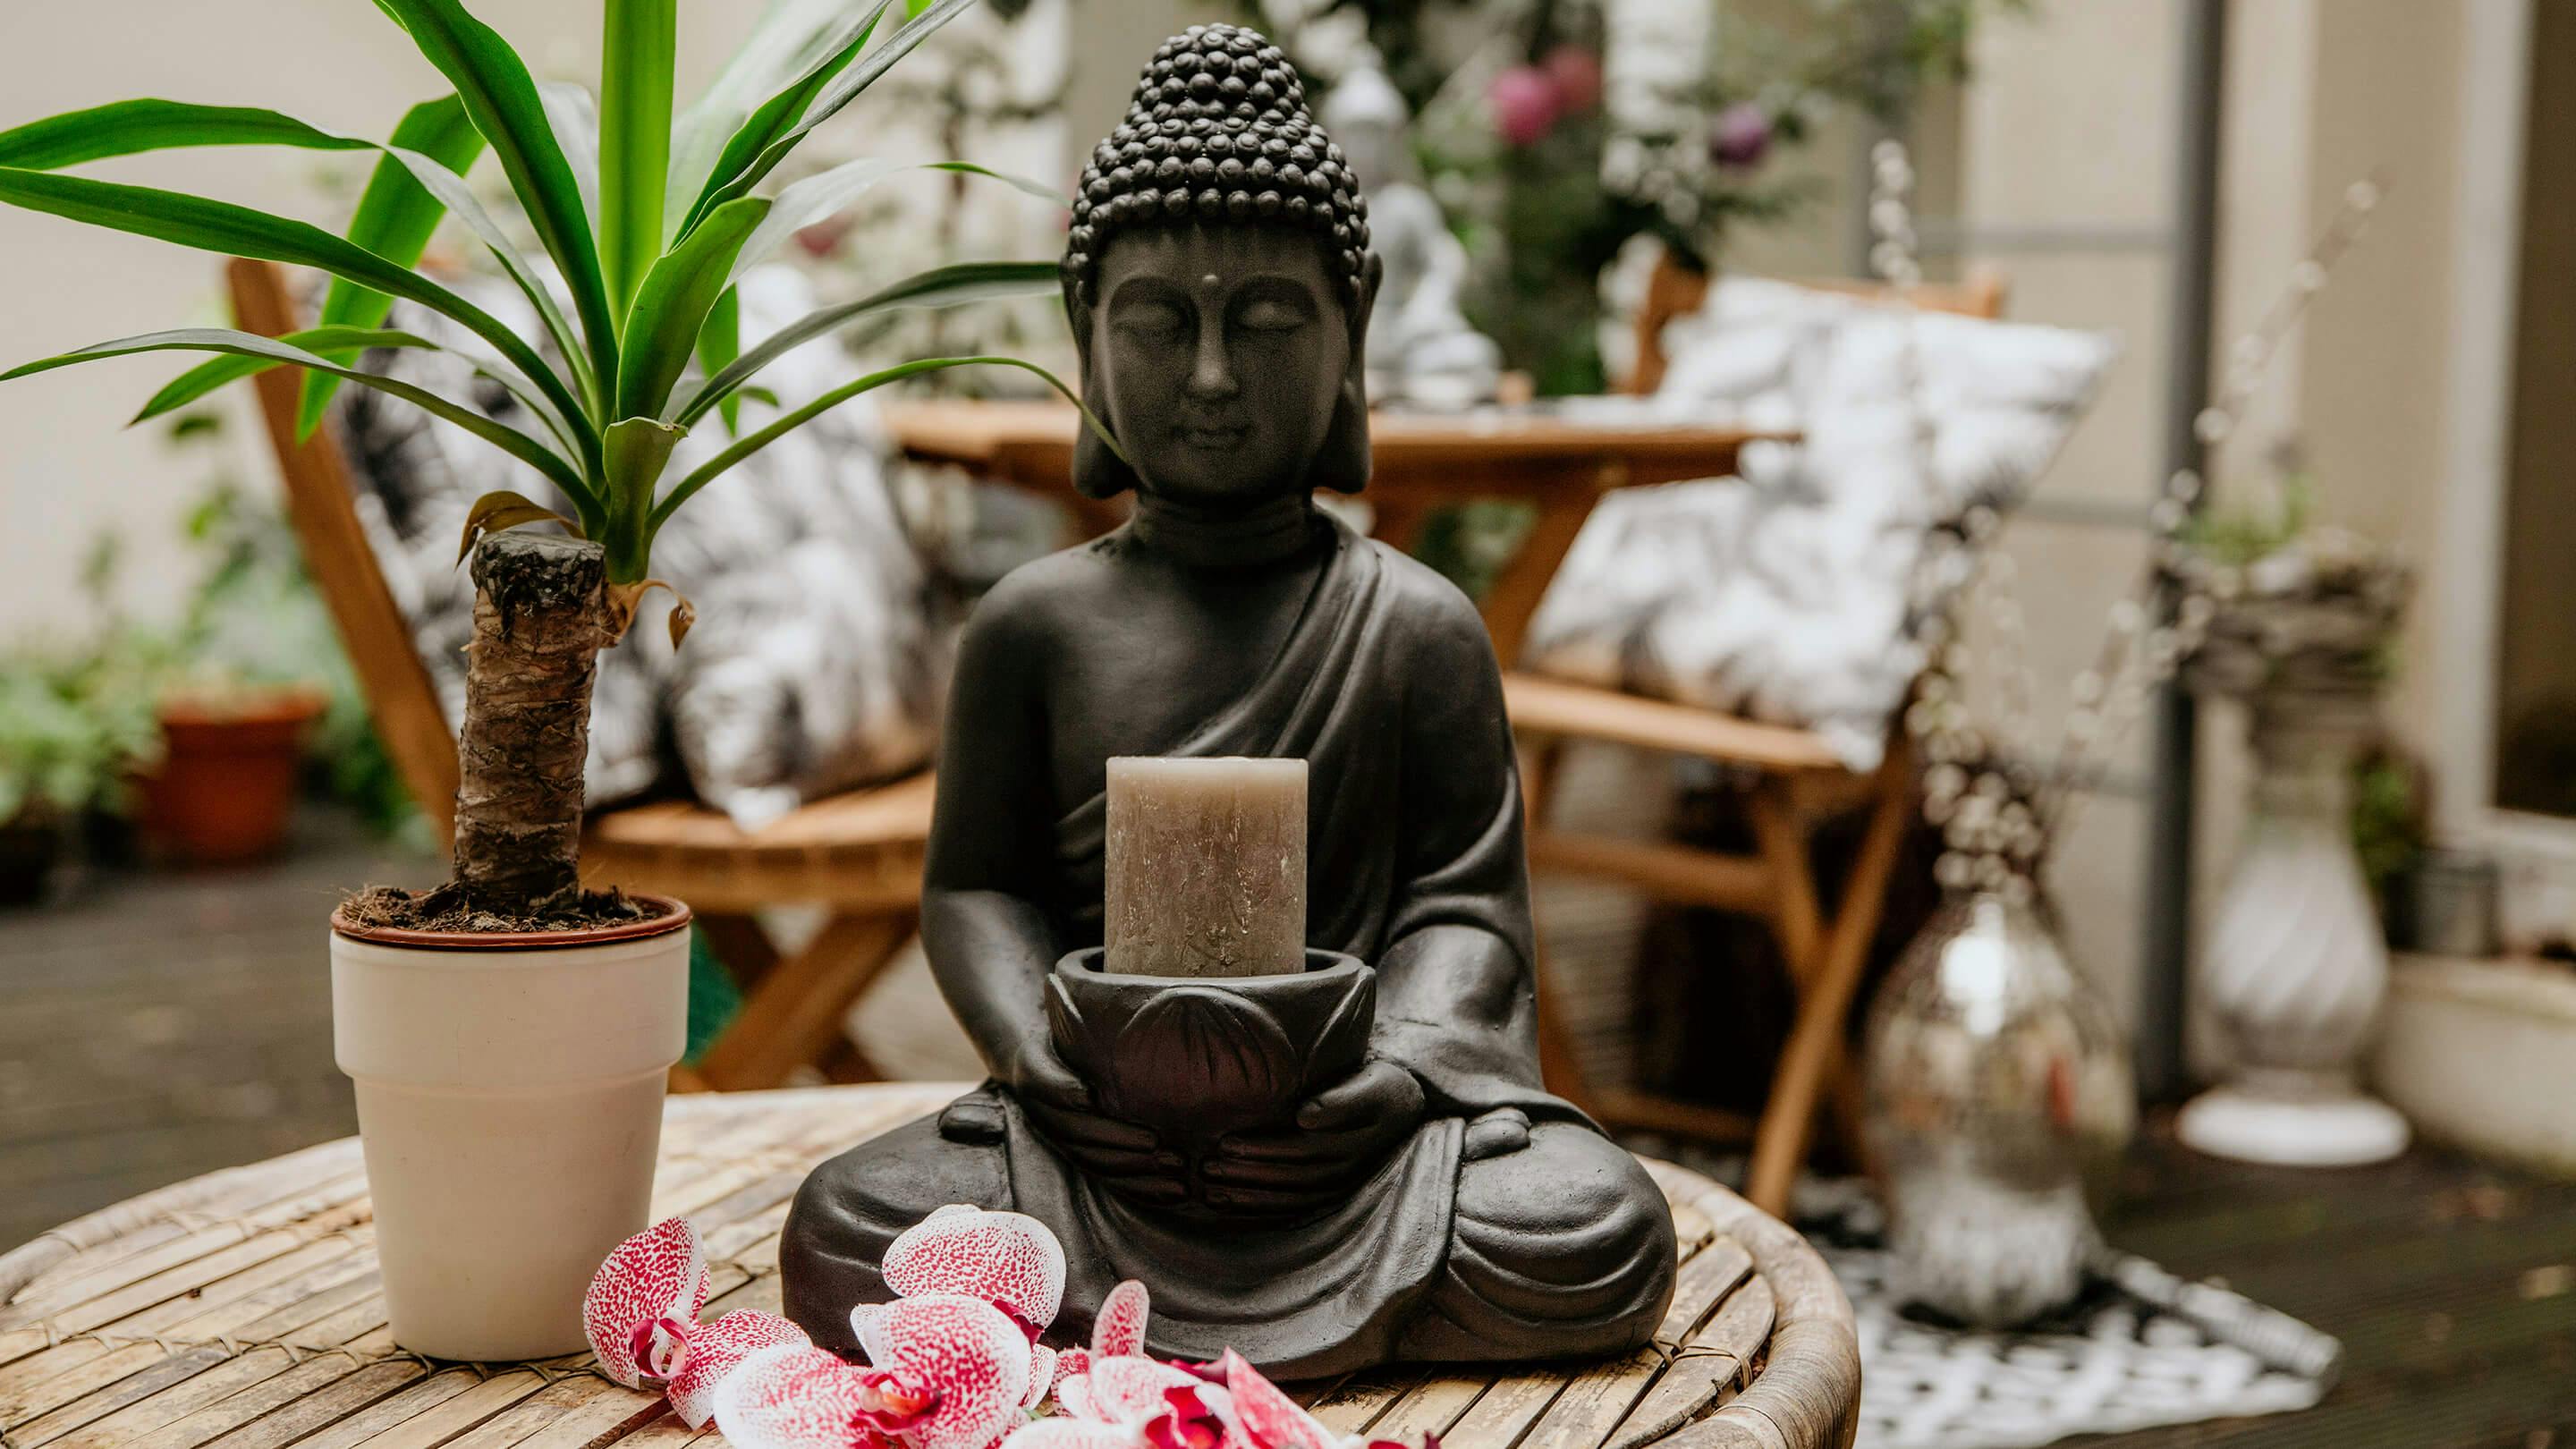 Buddha-Figur als Kerzenhalter, grüne Pflanzen in kleiner Vase in Beige auf einem Outdoor-Beistelltisch (Marke: Butlers).